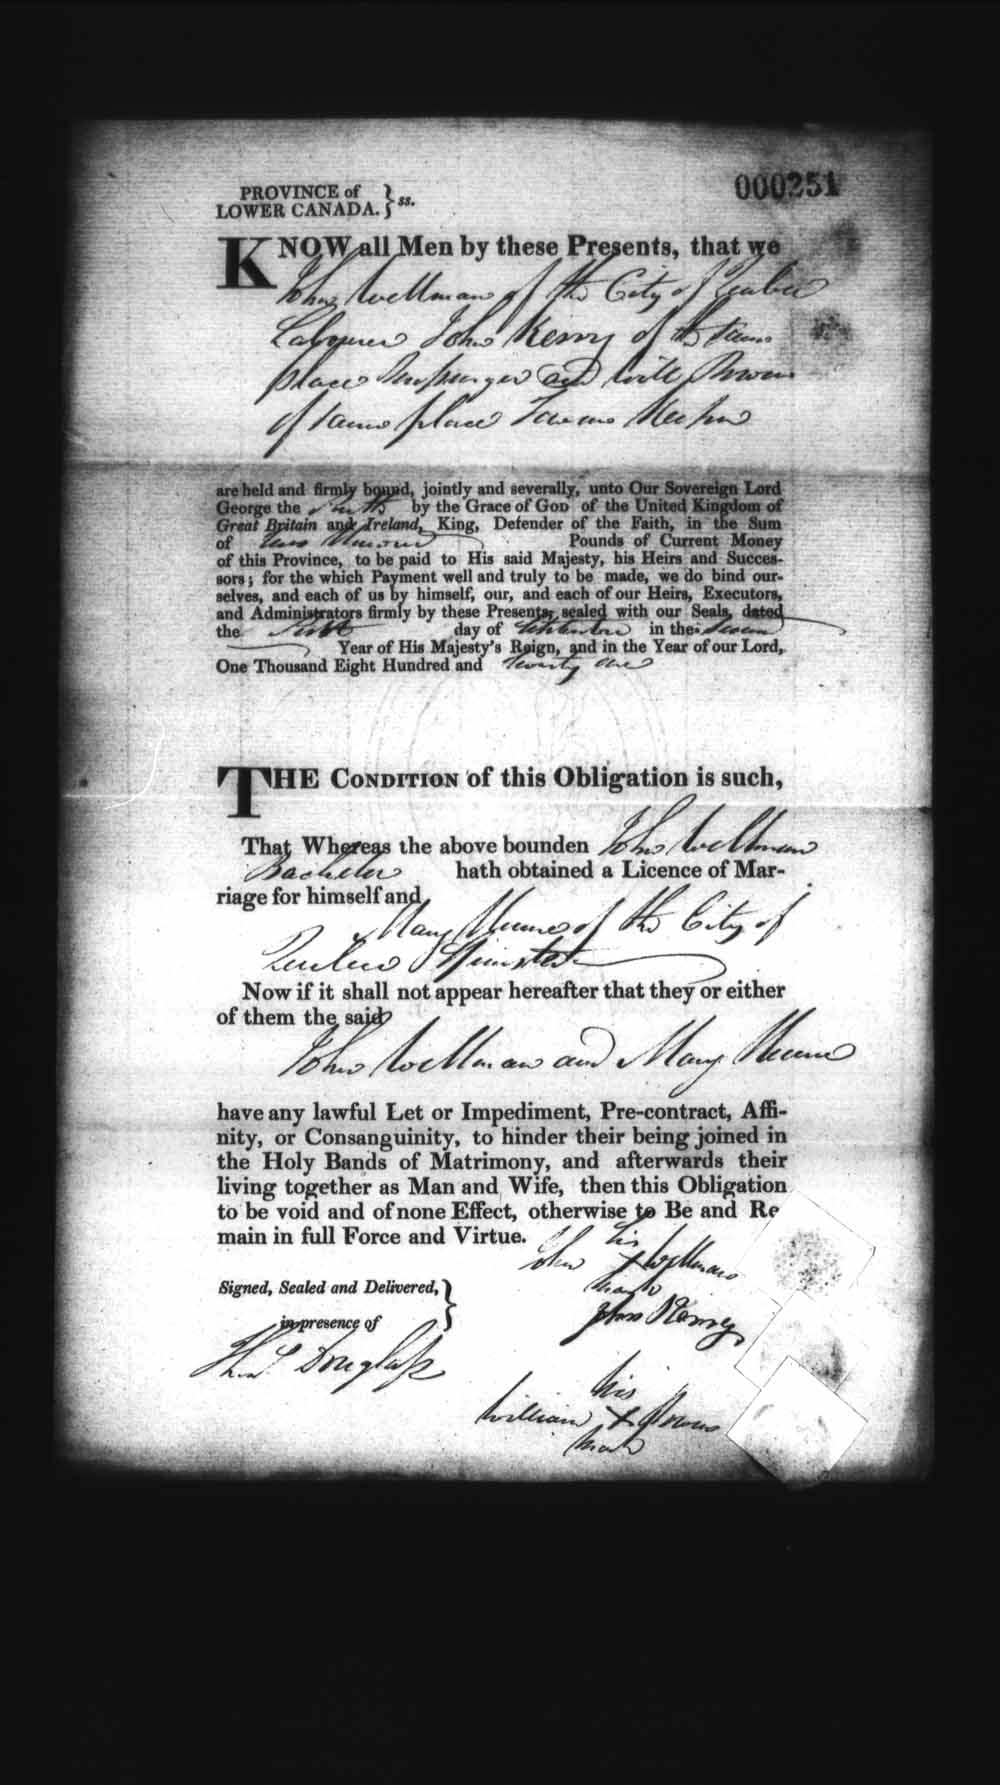 Page numérisé de Cautionnements de mariages pour le Haut-Canada et le Bas-Canada (1779-1865) pour l'image numéro: e008236113